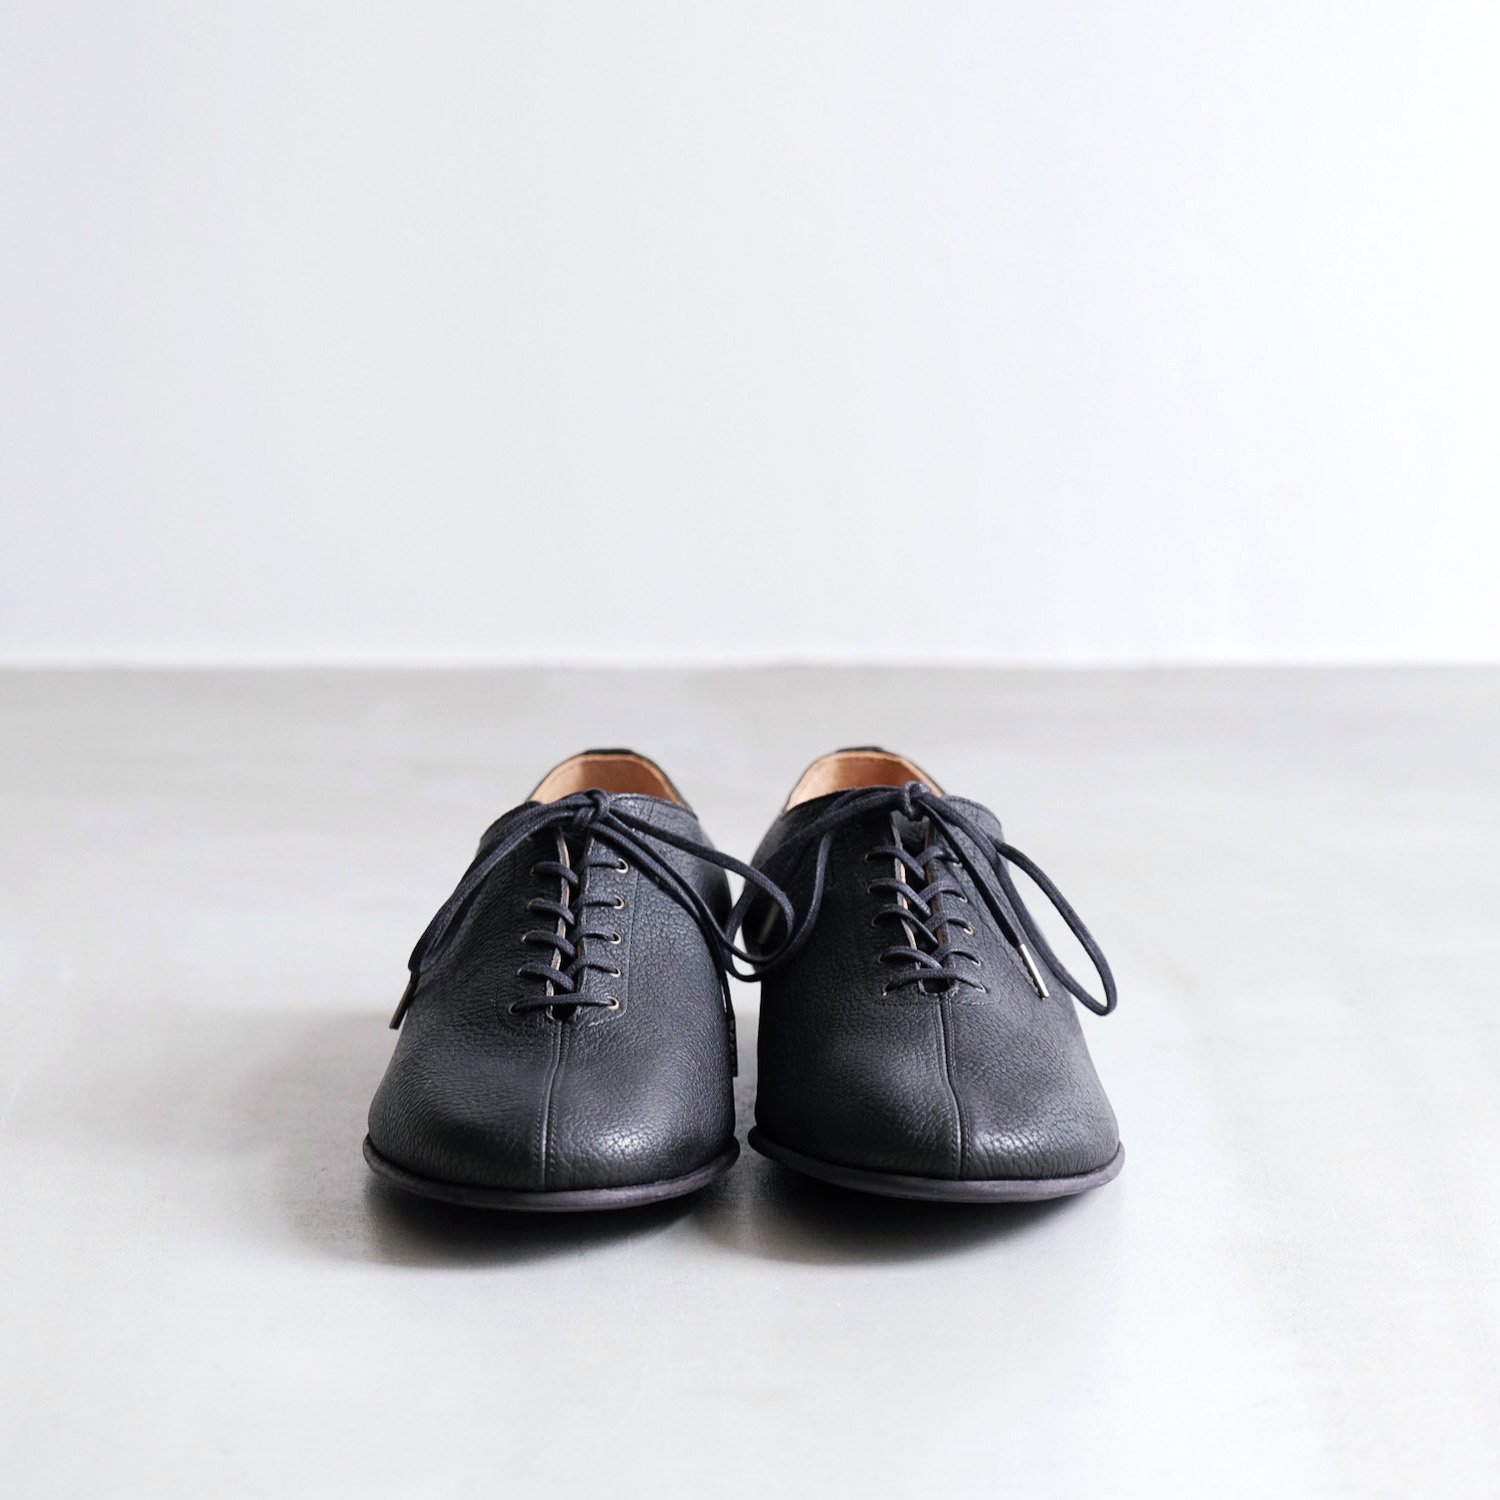 流行に フォルメ プレーントゥシューズ (ブラック) Calf (fm-83) 靴 